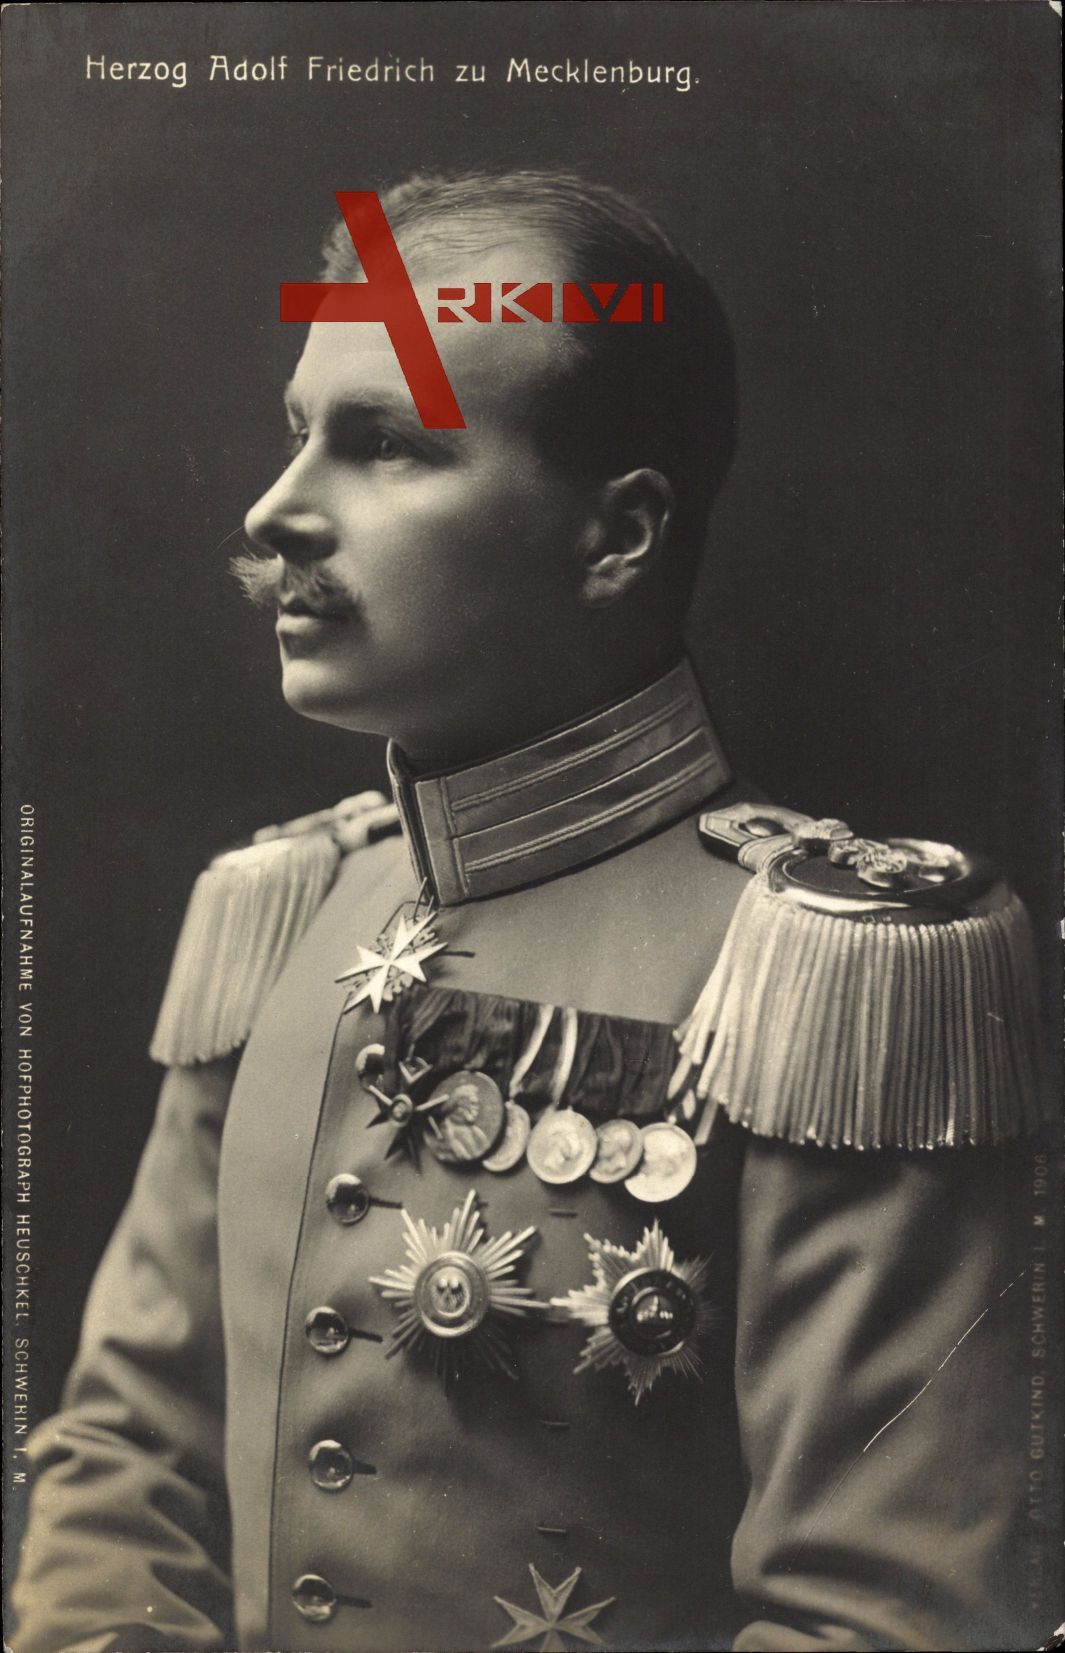 Herzog Adolf Friedrich zu Mecklenburg in Uniform